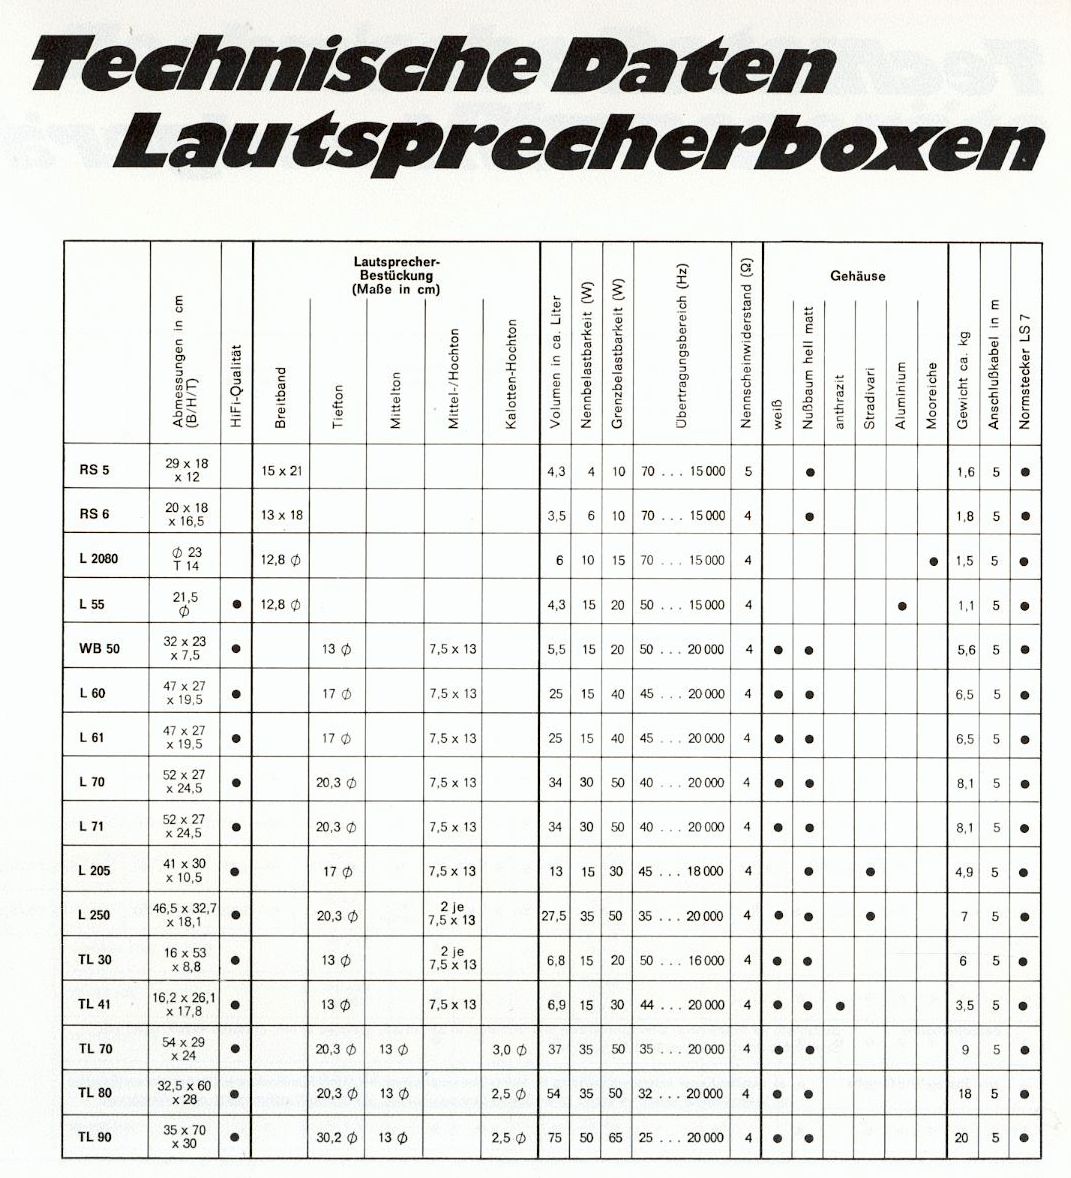 Telefunken Lautsprecher 1972-Daten.jpg